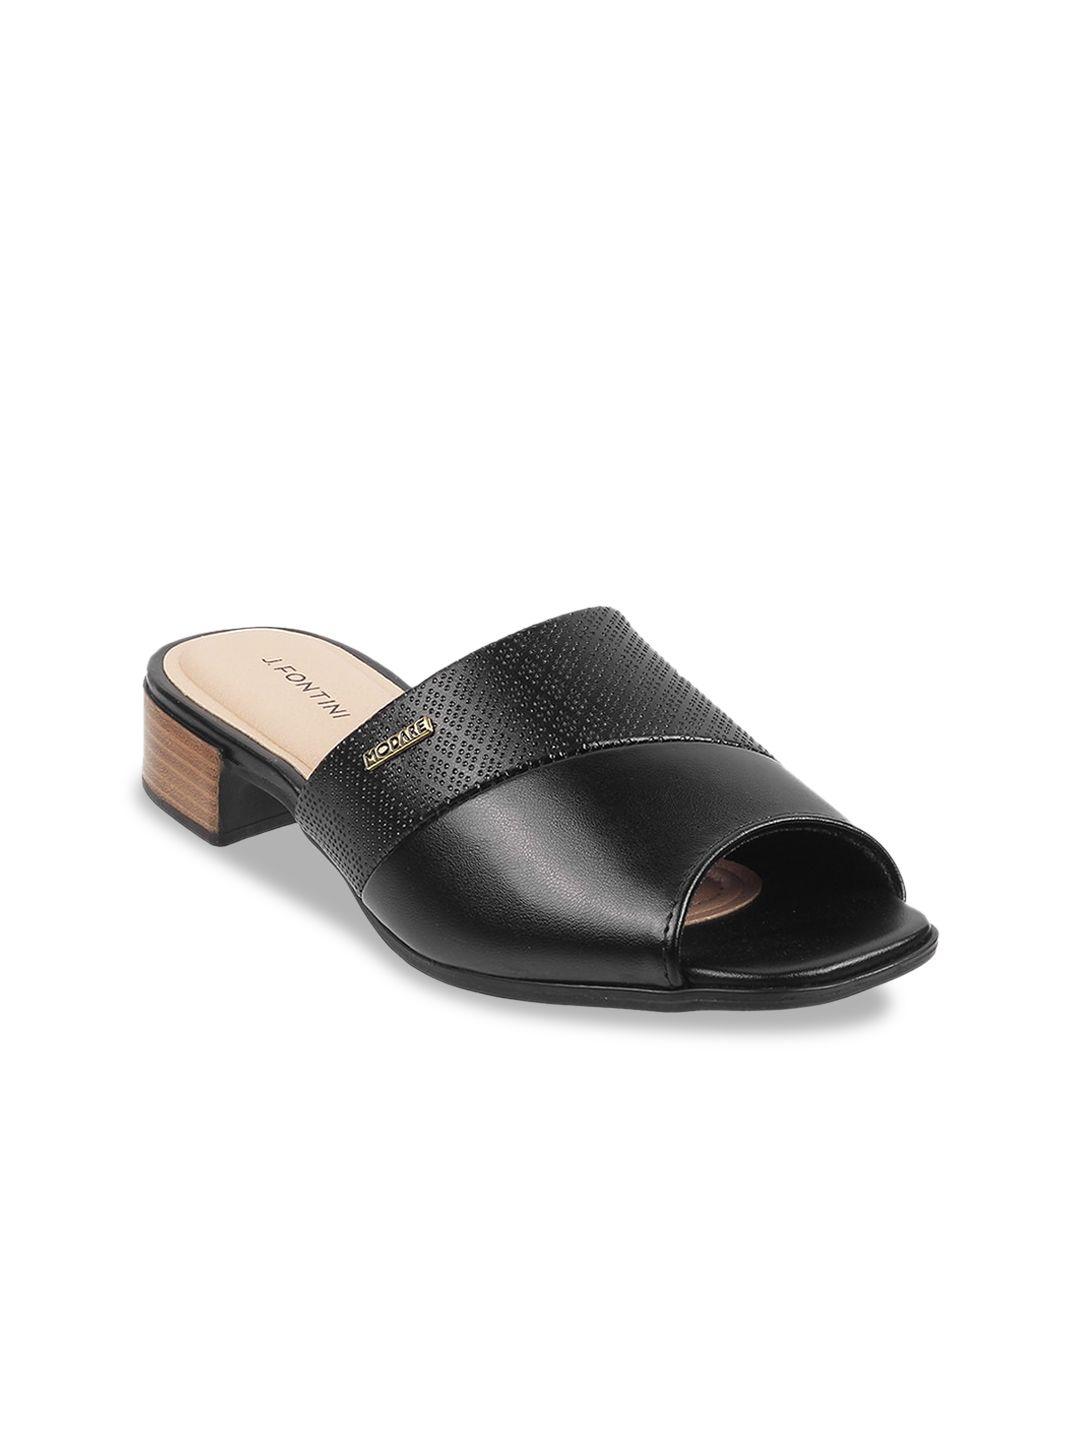 j.fontini peeps toes block heels